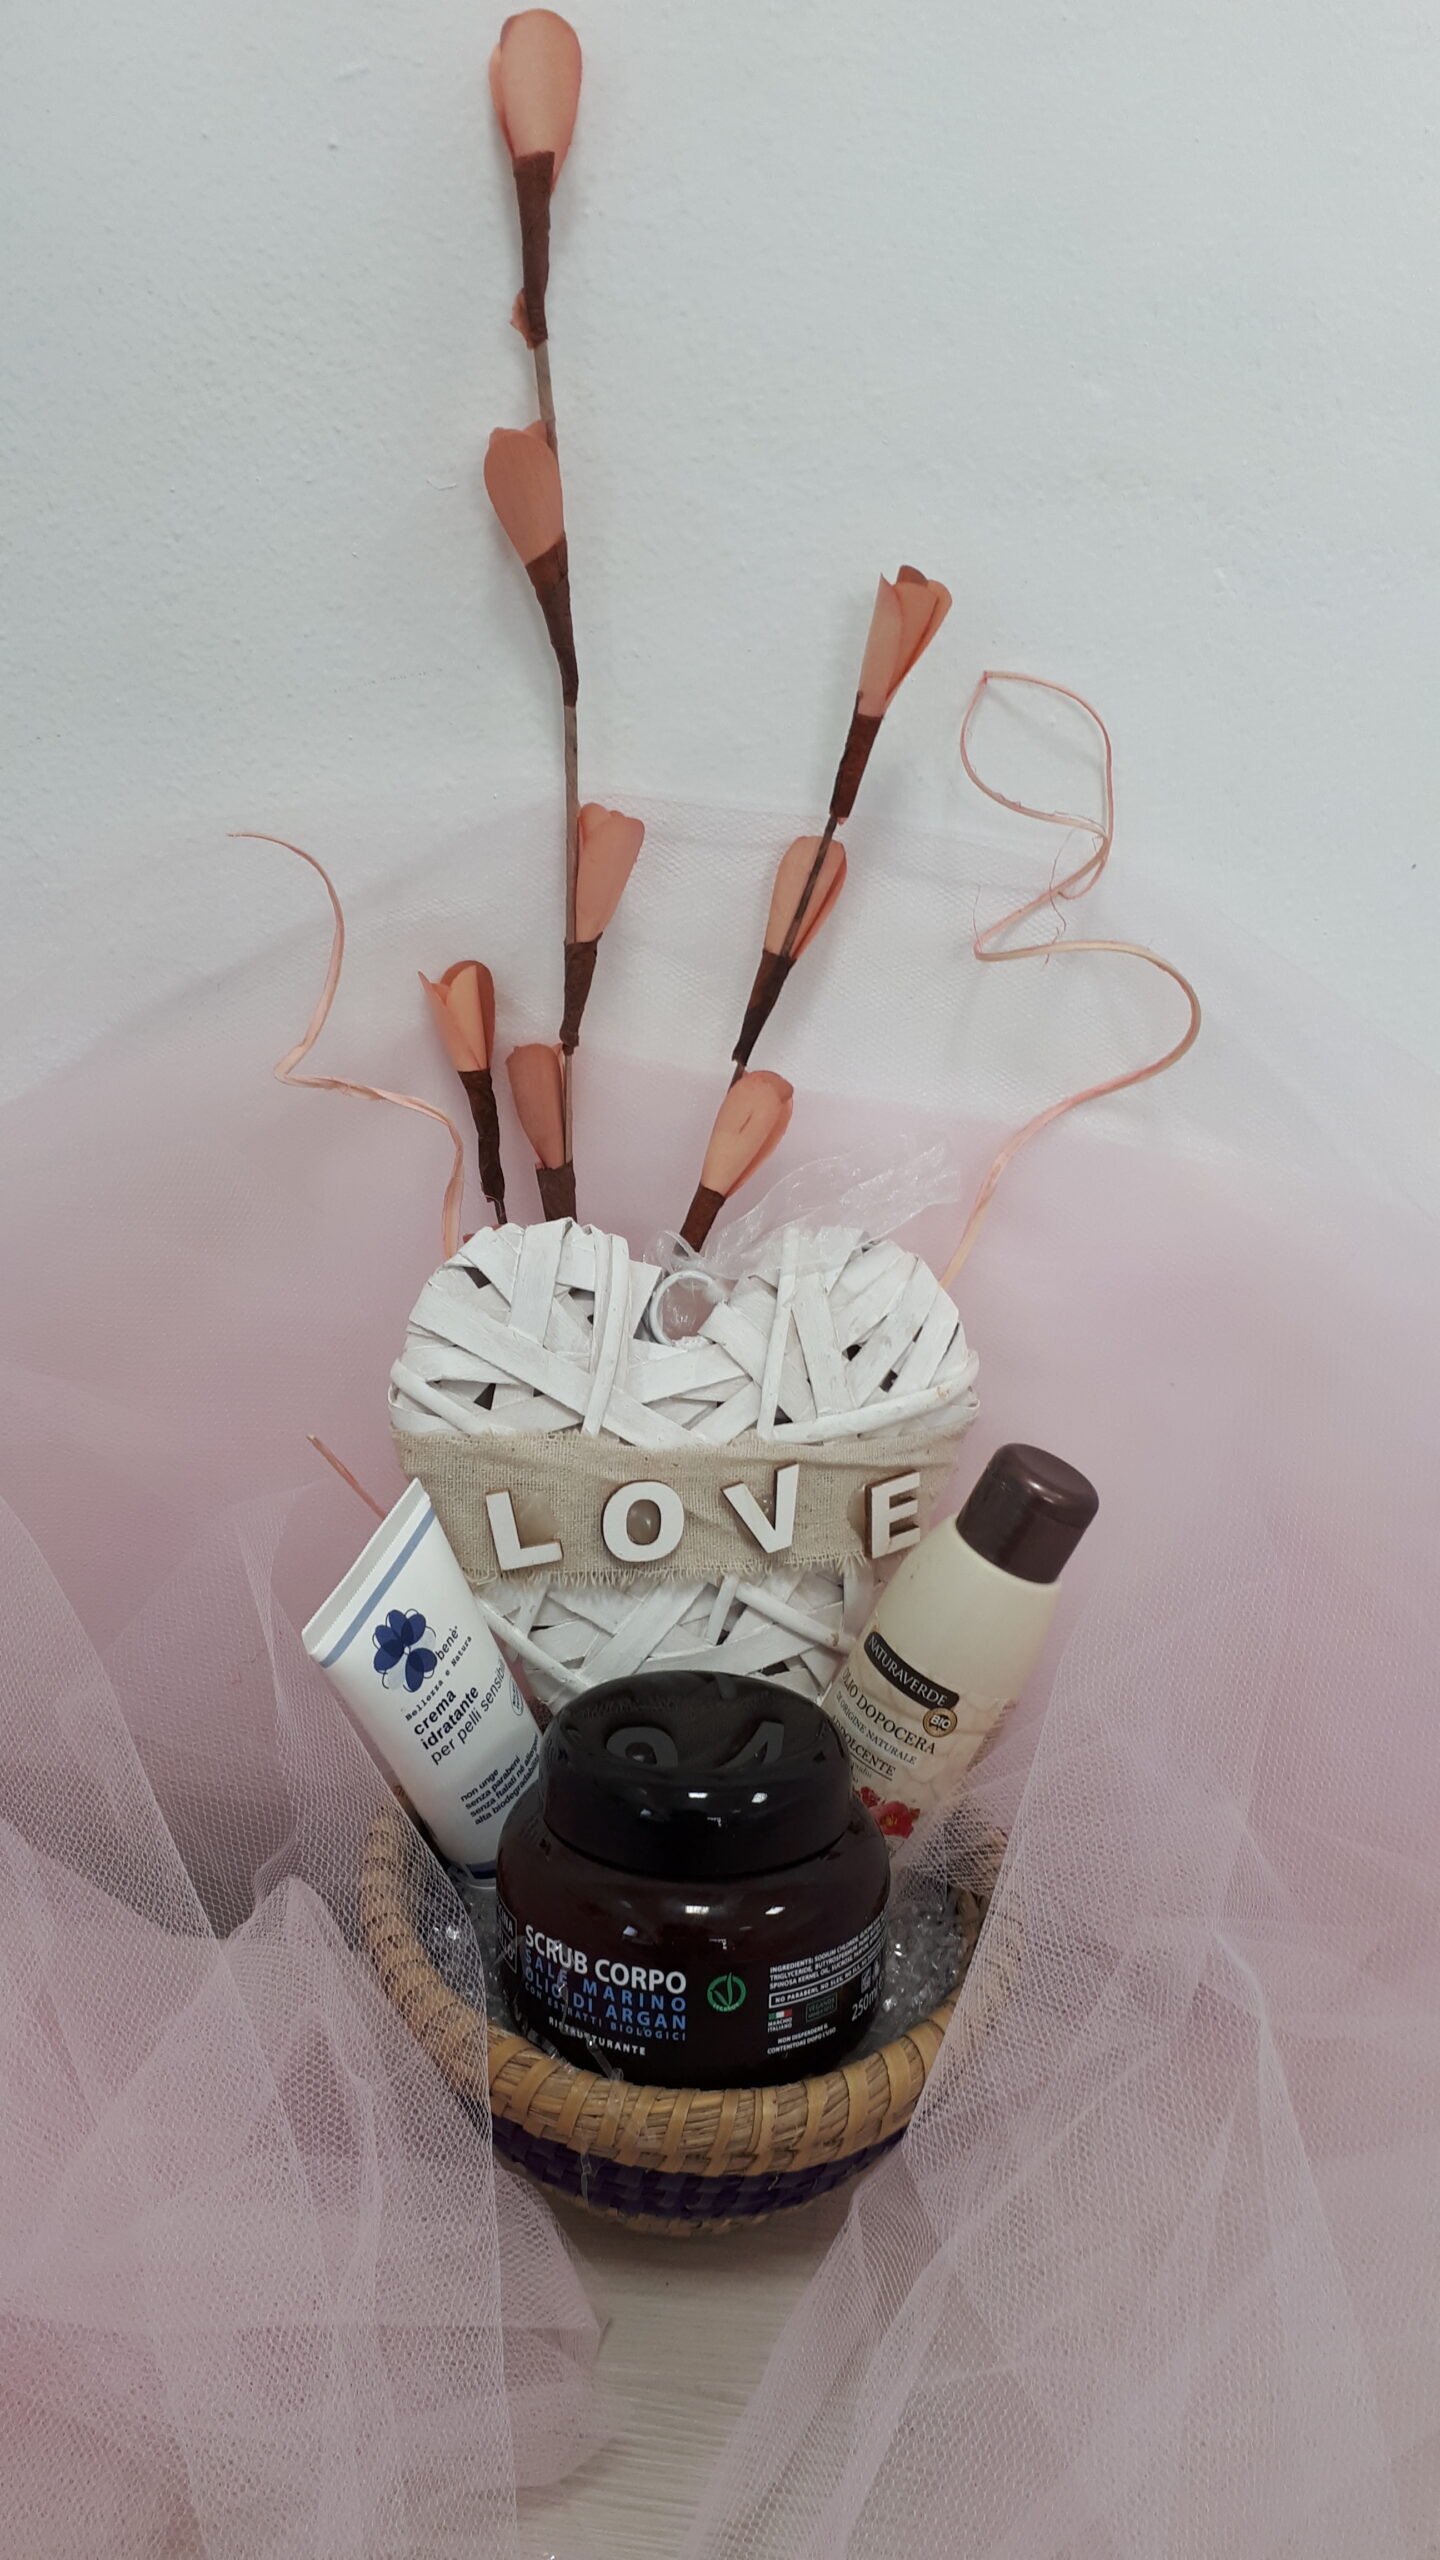 Confezione regalo LOVEBIO: cestino in paglia, inserto bleu confezionato con tulle rosa